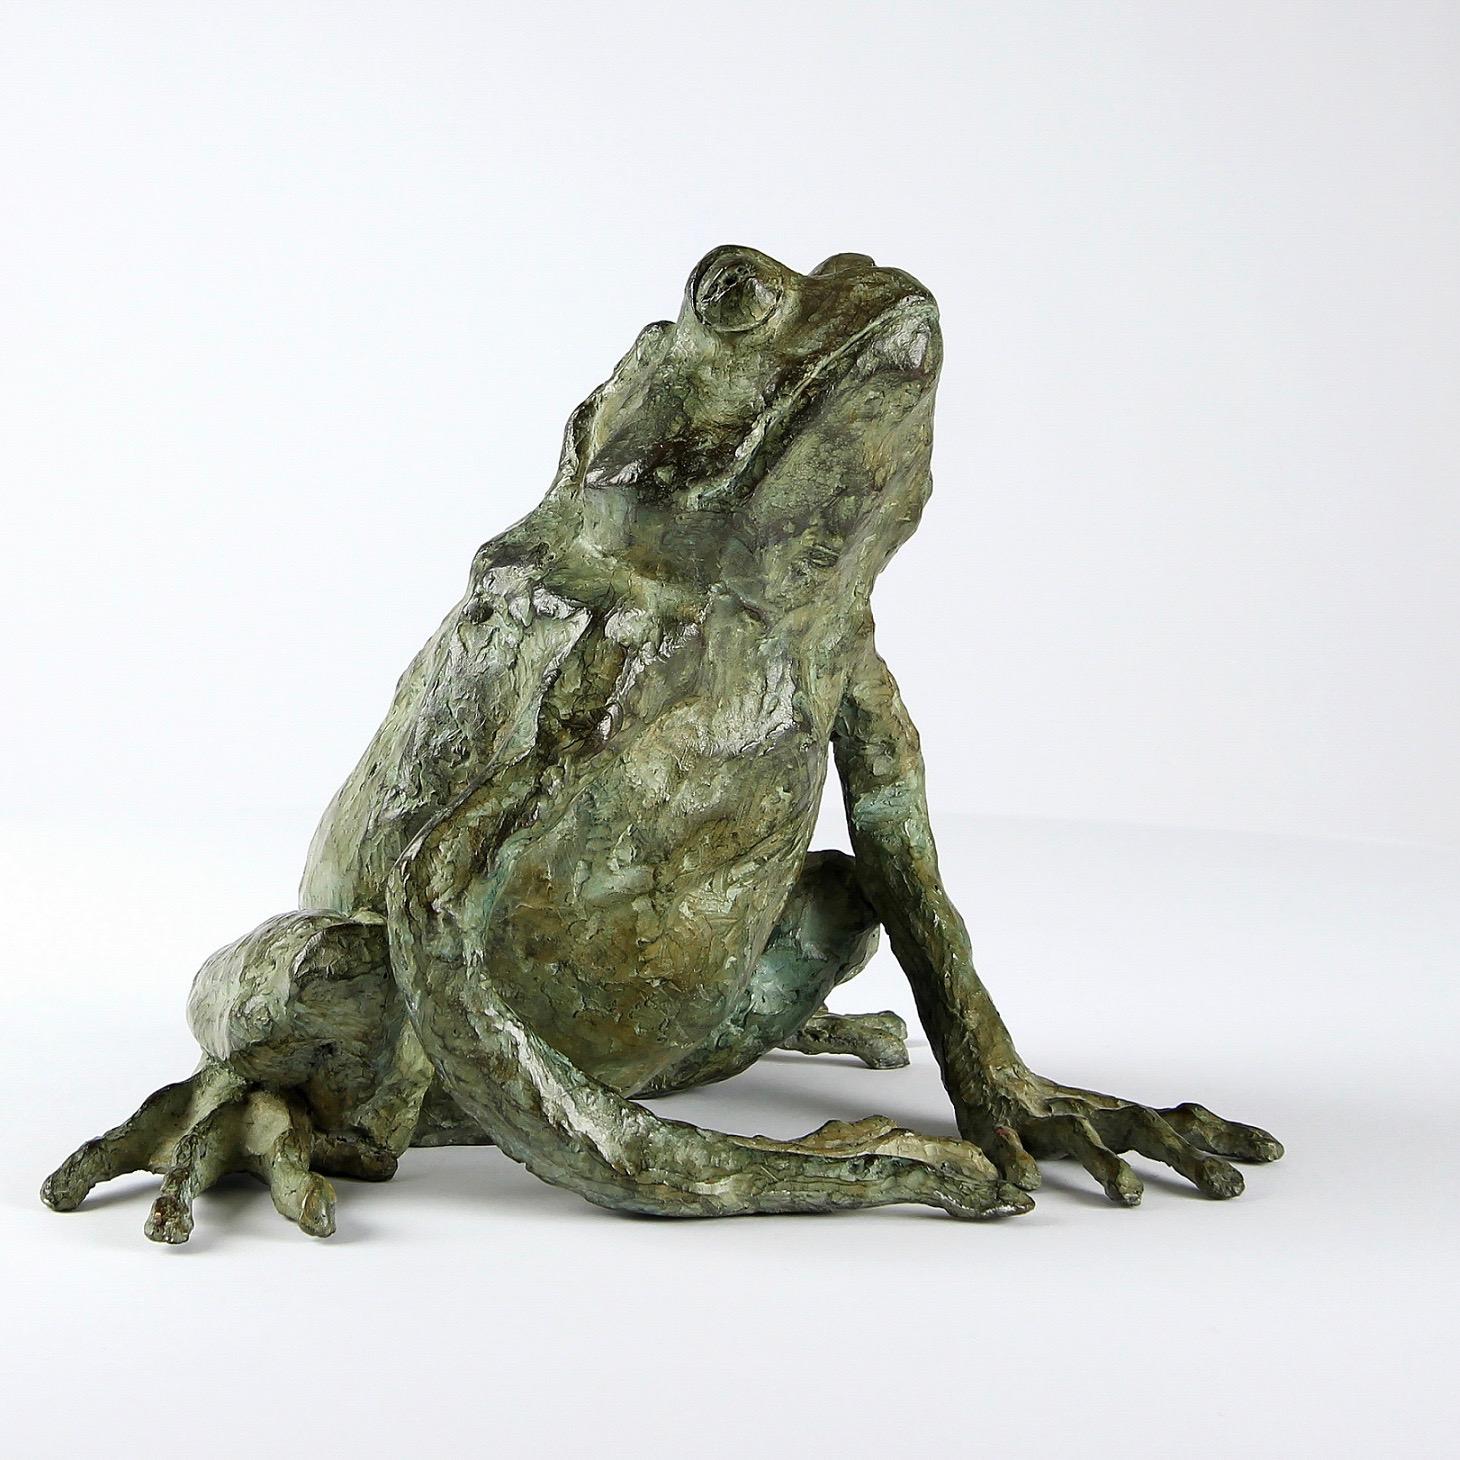 Magic Frog ist eine Bronzeskulptur des zeitgenössischen Künstlers Chésade mit den Maßen 17 × 14 × 12 cm (6,7 × 5,5 × 4,7 in). 
Die Skulptur ist signiert und nummeriert, gehört zu einer limitierten Auflage von 8 Exemplaren + 4 Künstlerabzügen und